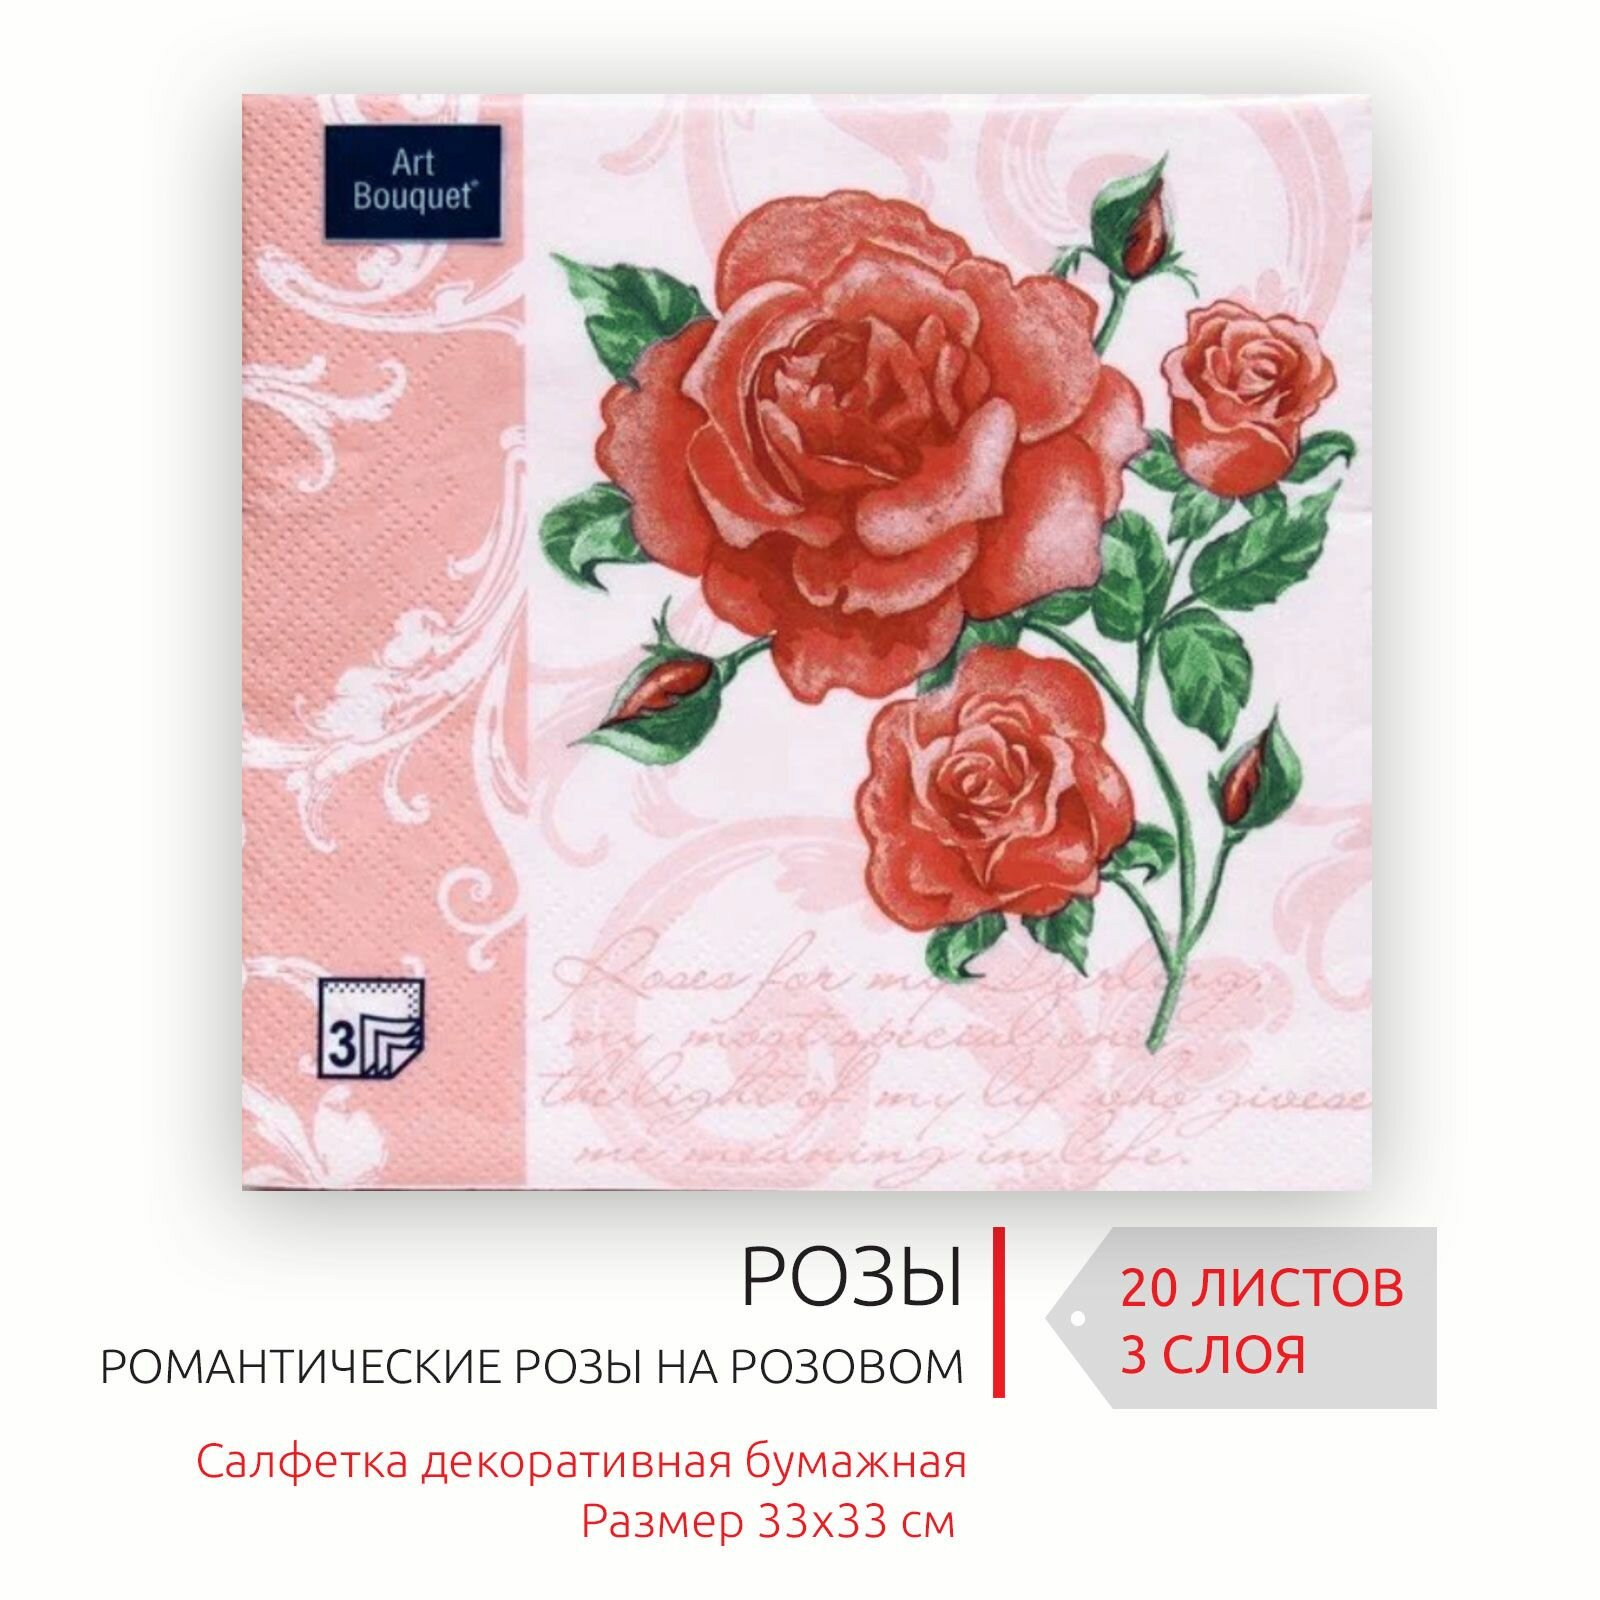 Декоративные праздничные бумажные салфетки Романтические розы на розовом, 33х33 см, 3 слоя, 20 листов